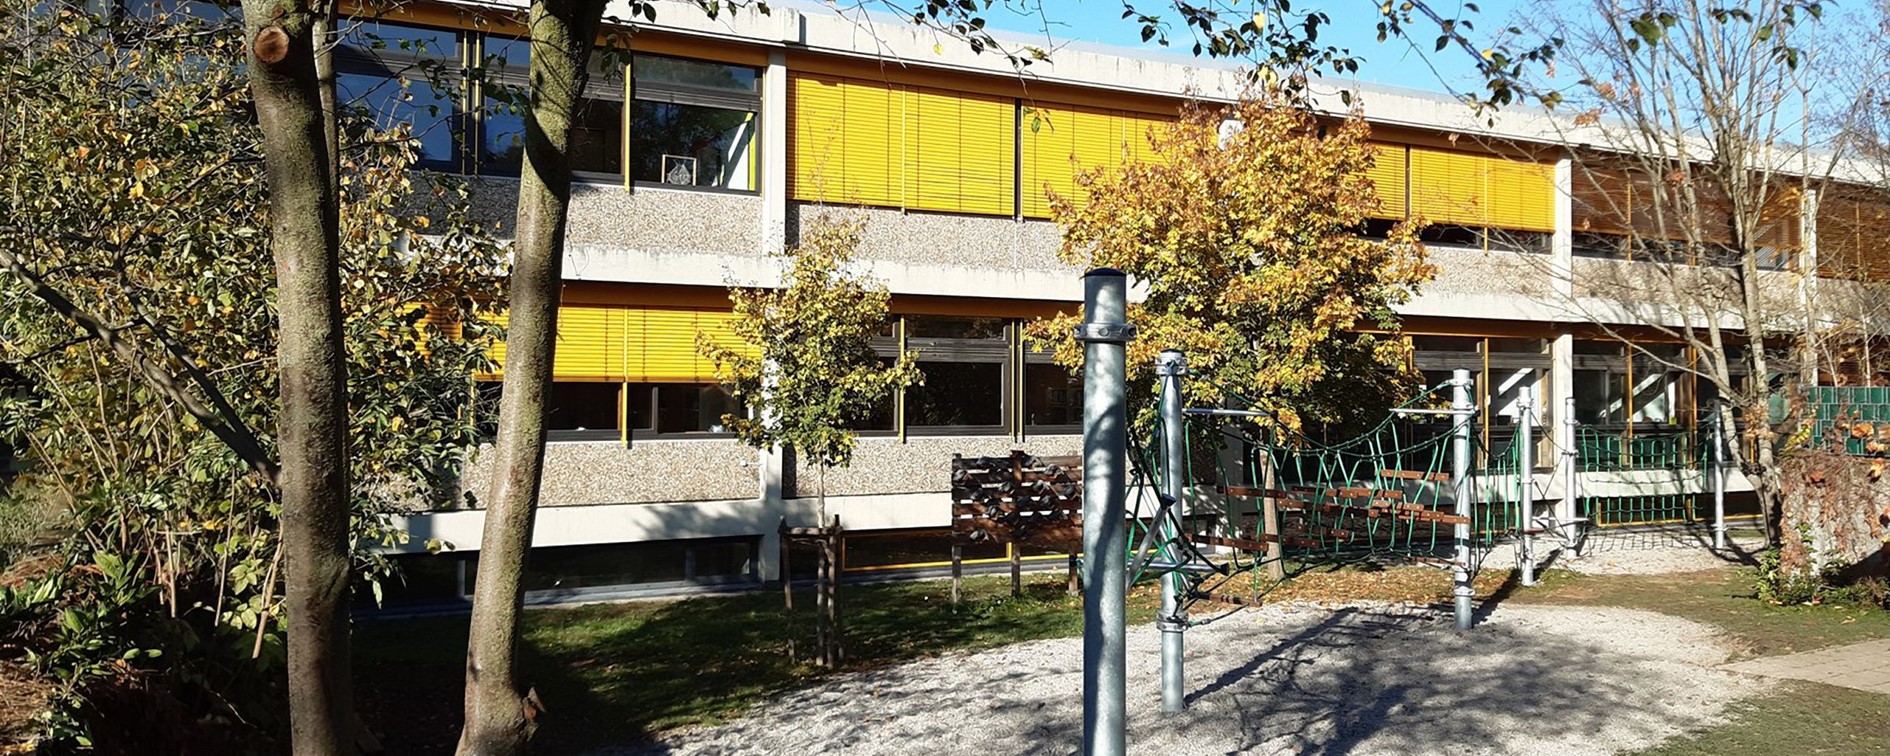 Niedrigseilgarten und Gebäude der Theodor-Heuss-Realschule